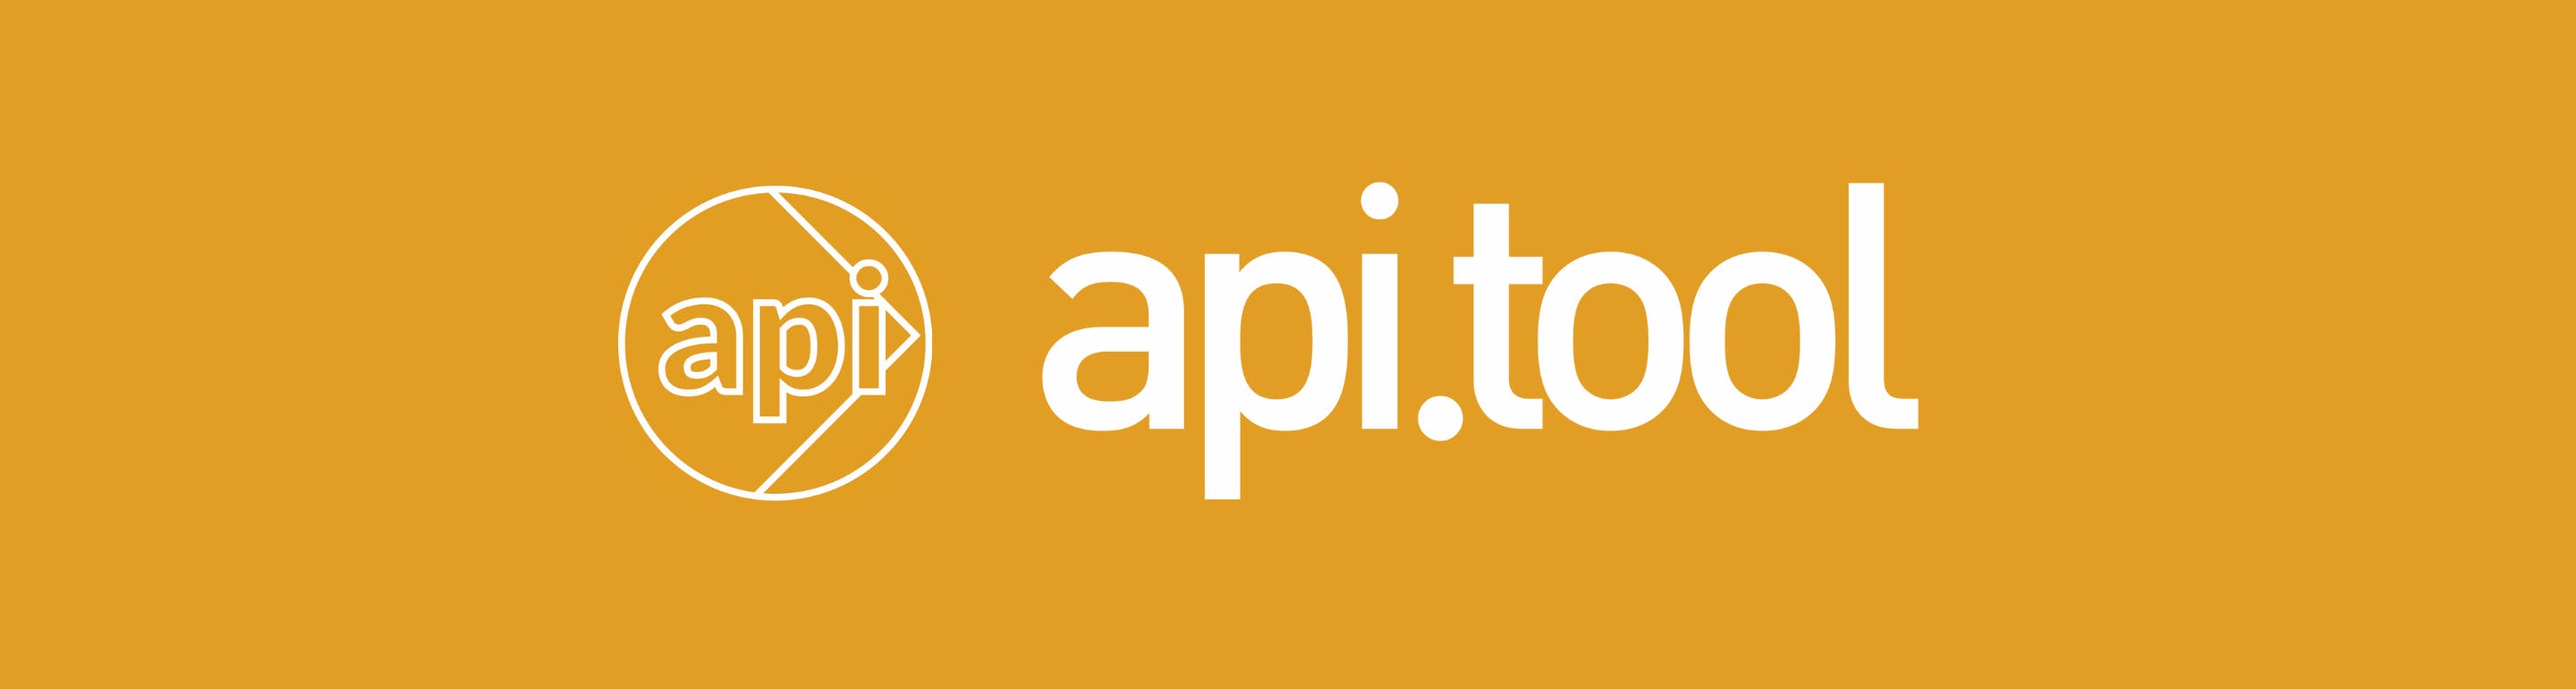 api.tool logo